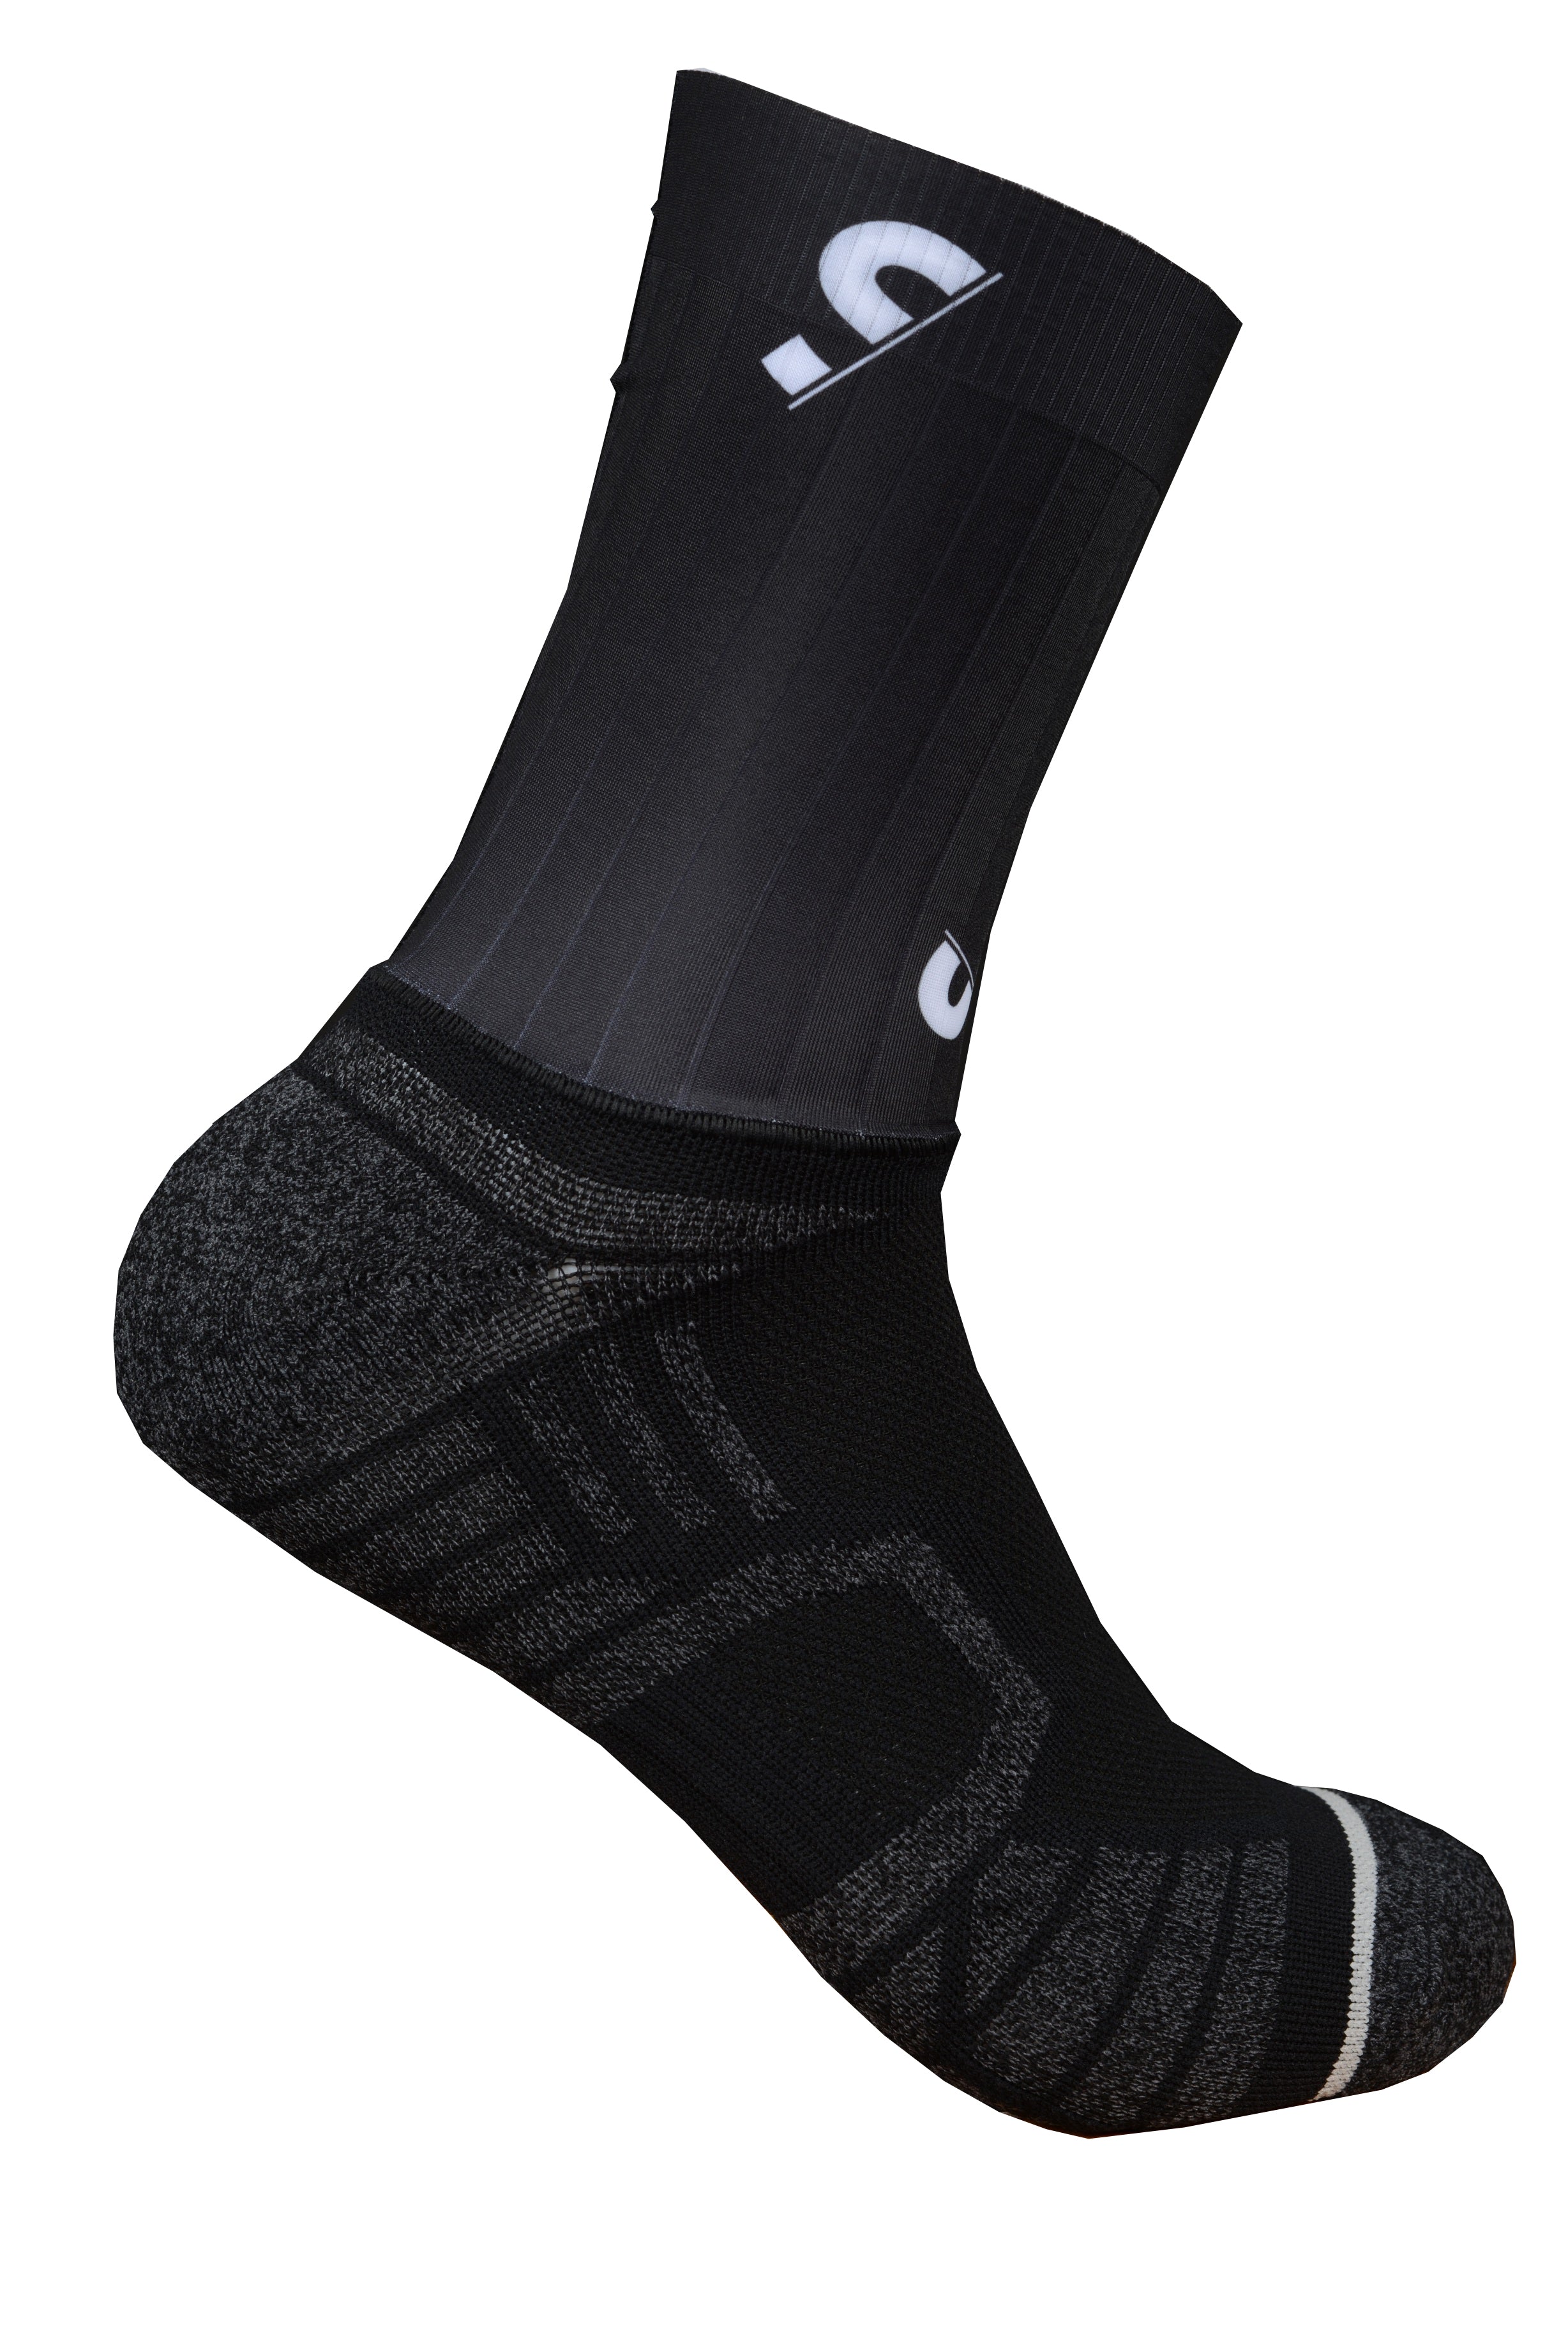 Aero socks